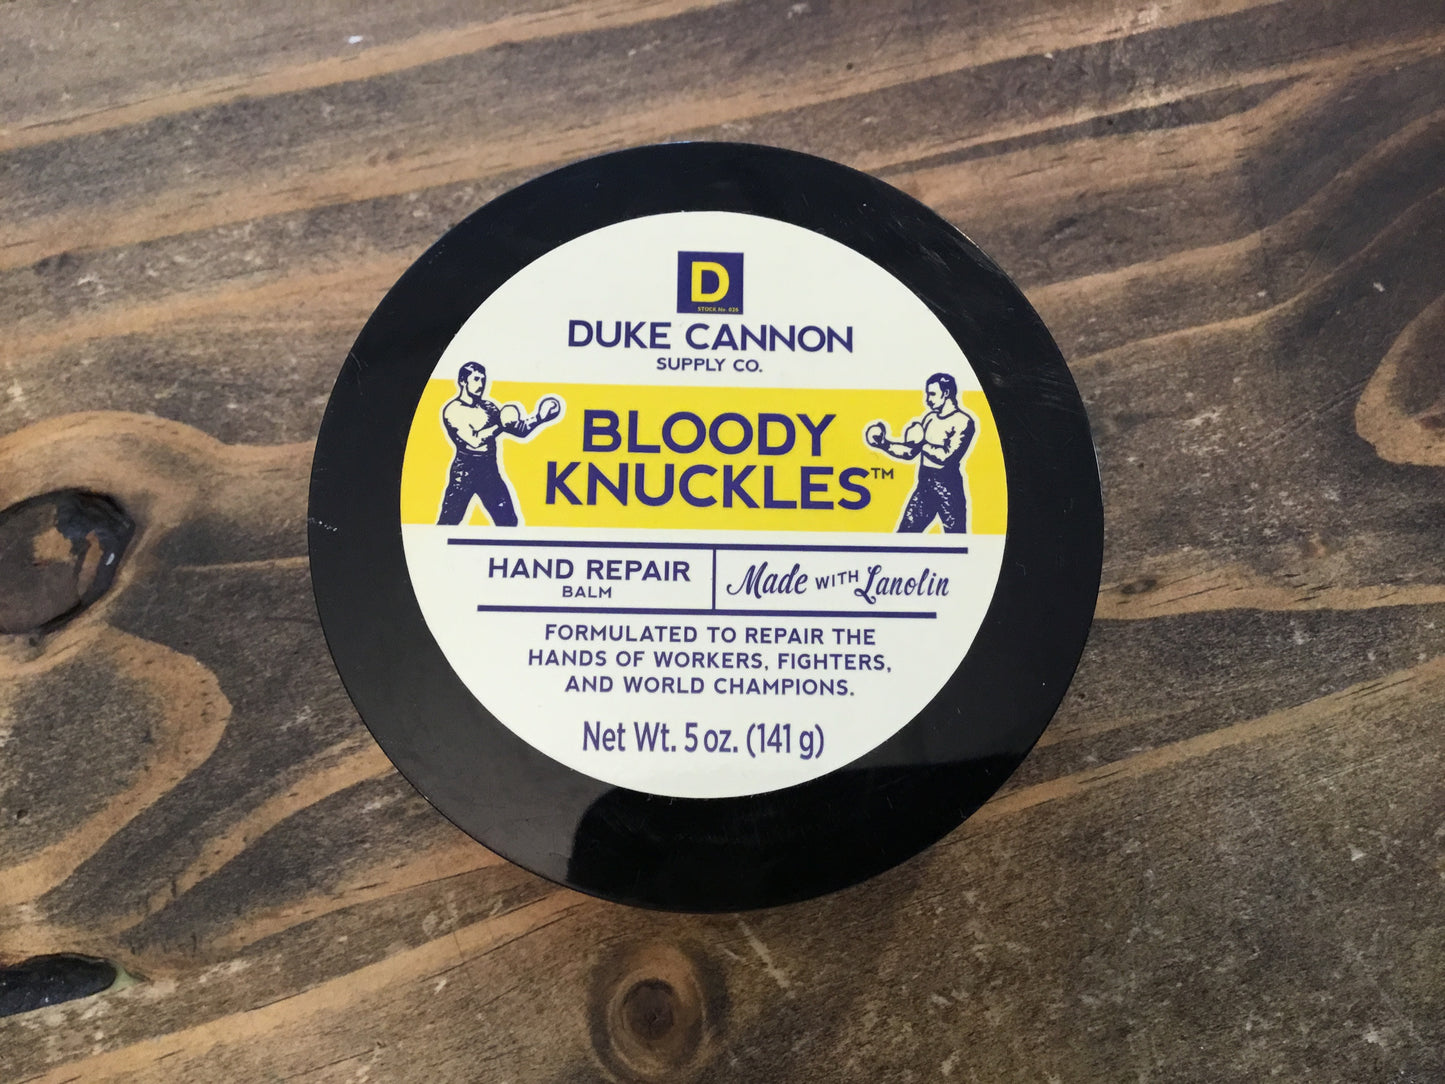 Bloody Knuckles Repair Balm